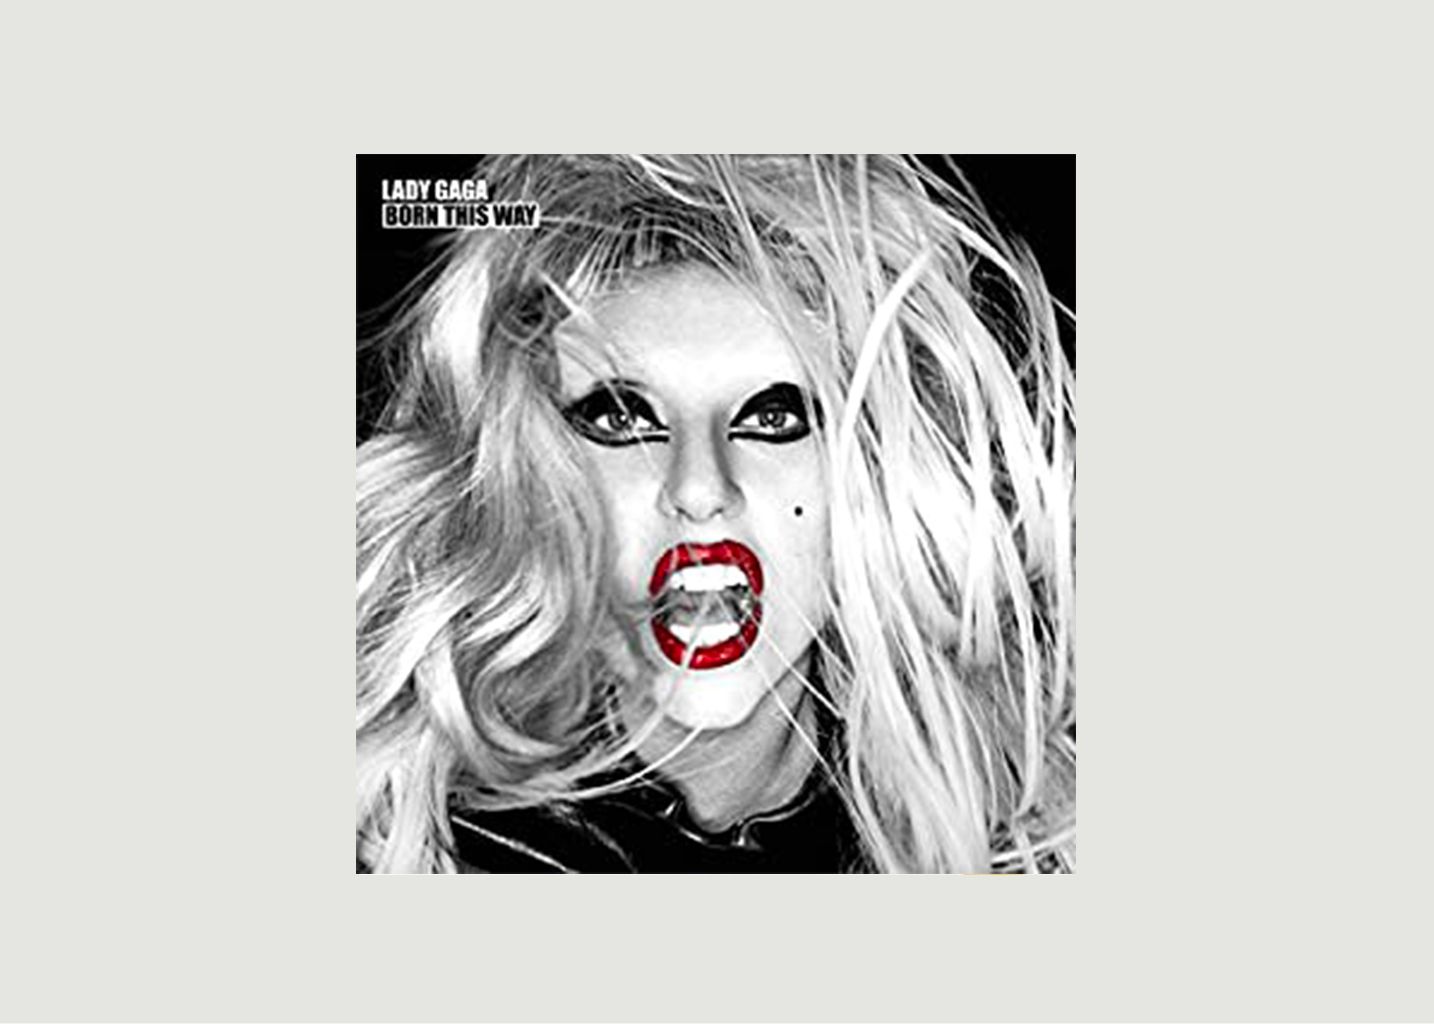 Vinyle Born This Way Lady Gaga - La vinyl-thèque idéale